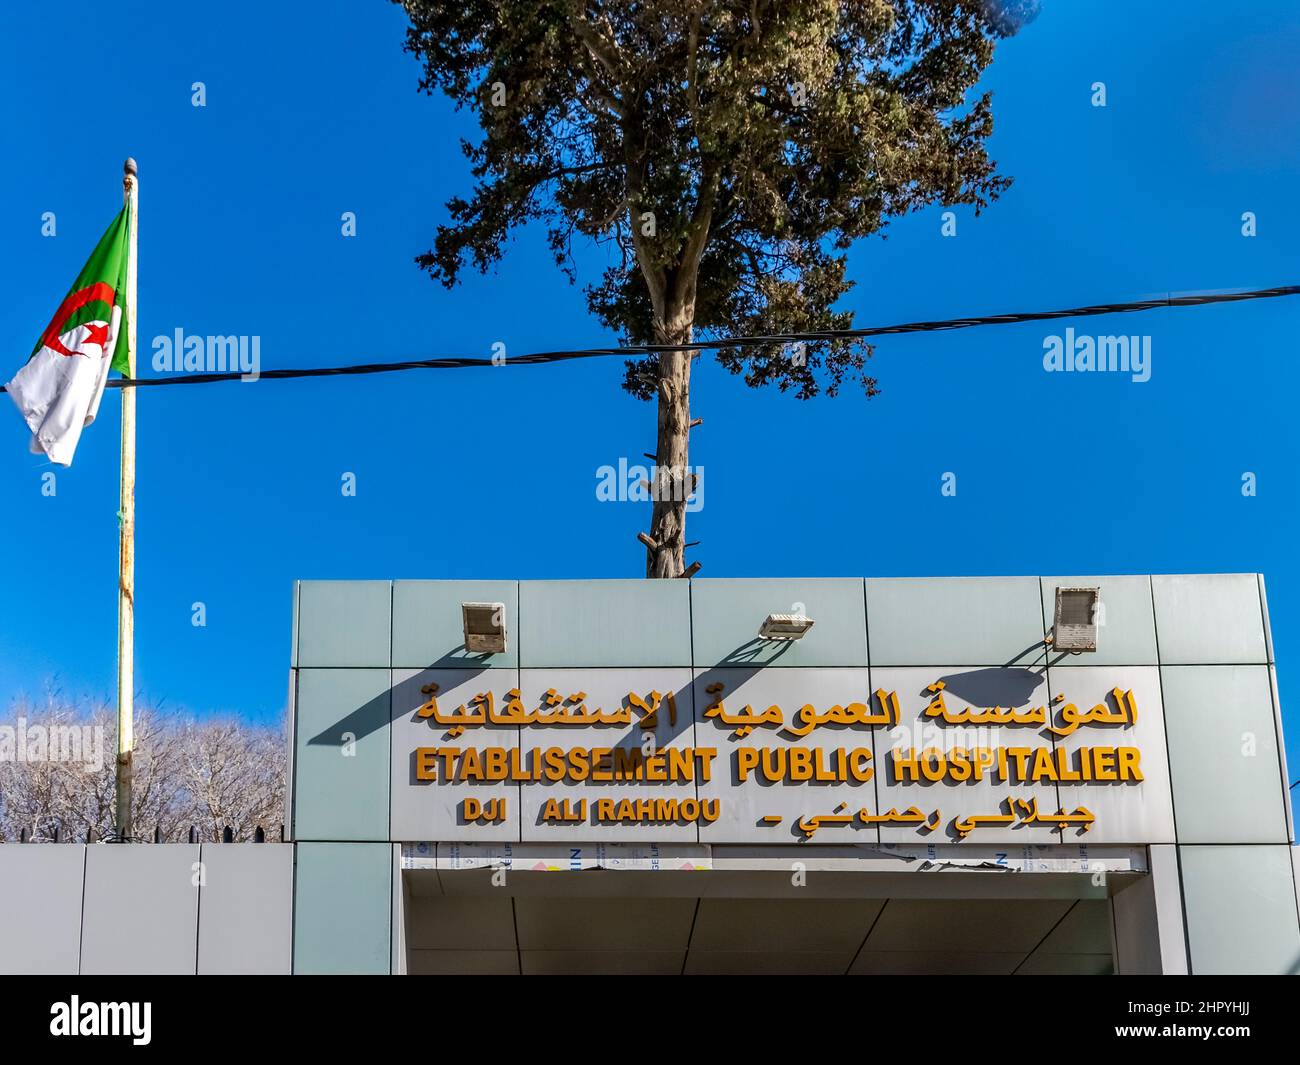 Ospedale pubblico stabilimento Rahmoumi Djillali ingresso. Targa del nome in arabo e francese. Bandiera algerina, cavo elettrico, alberi, cielo blu. Foto Stock